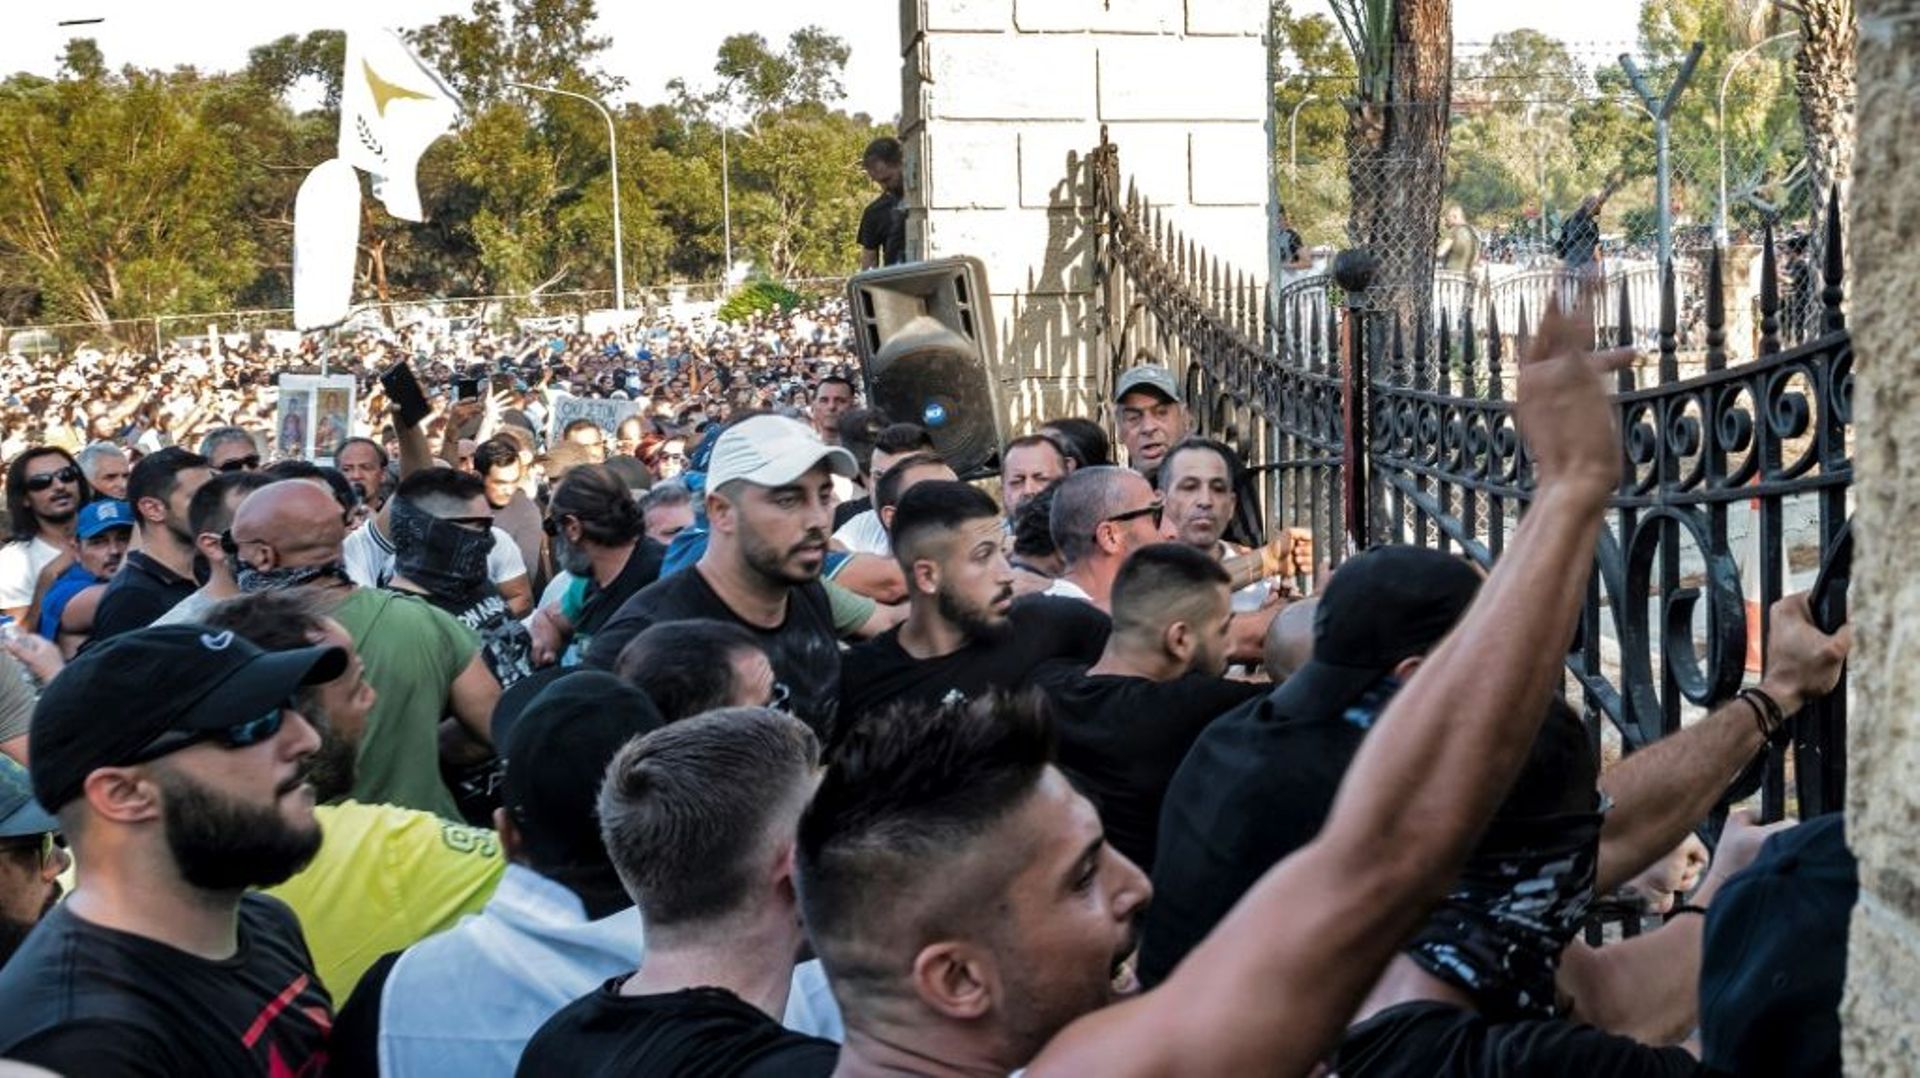 Des manifestants contre les restrictions liées à l’épidémie de Covid-19 sont rassemblés devant les grilles du palais présidentiel le 18 juillet 2021 à Nicosie